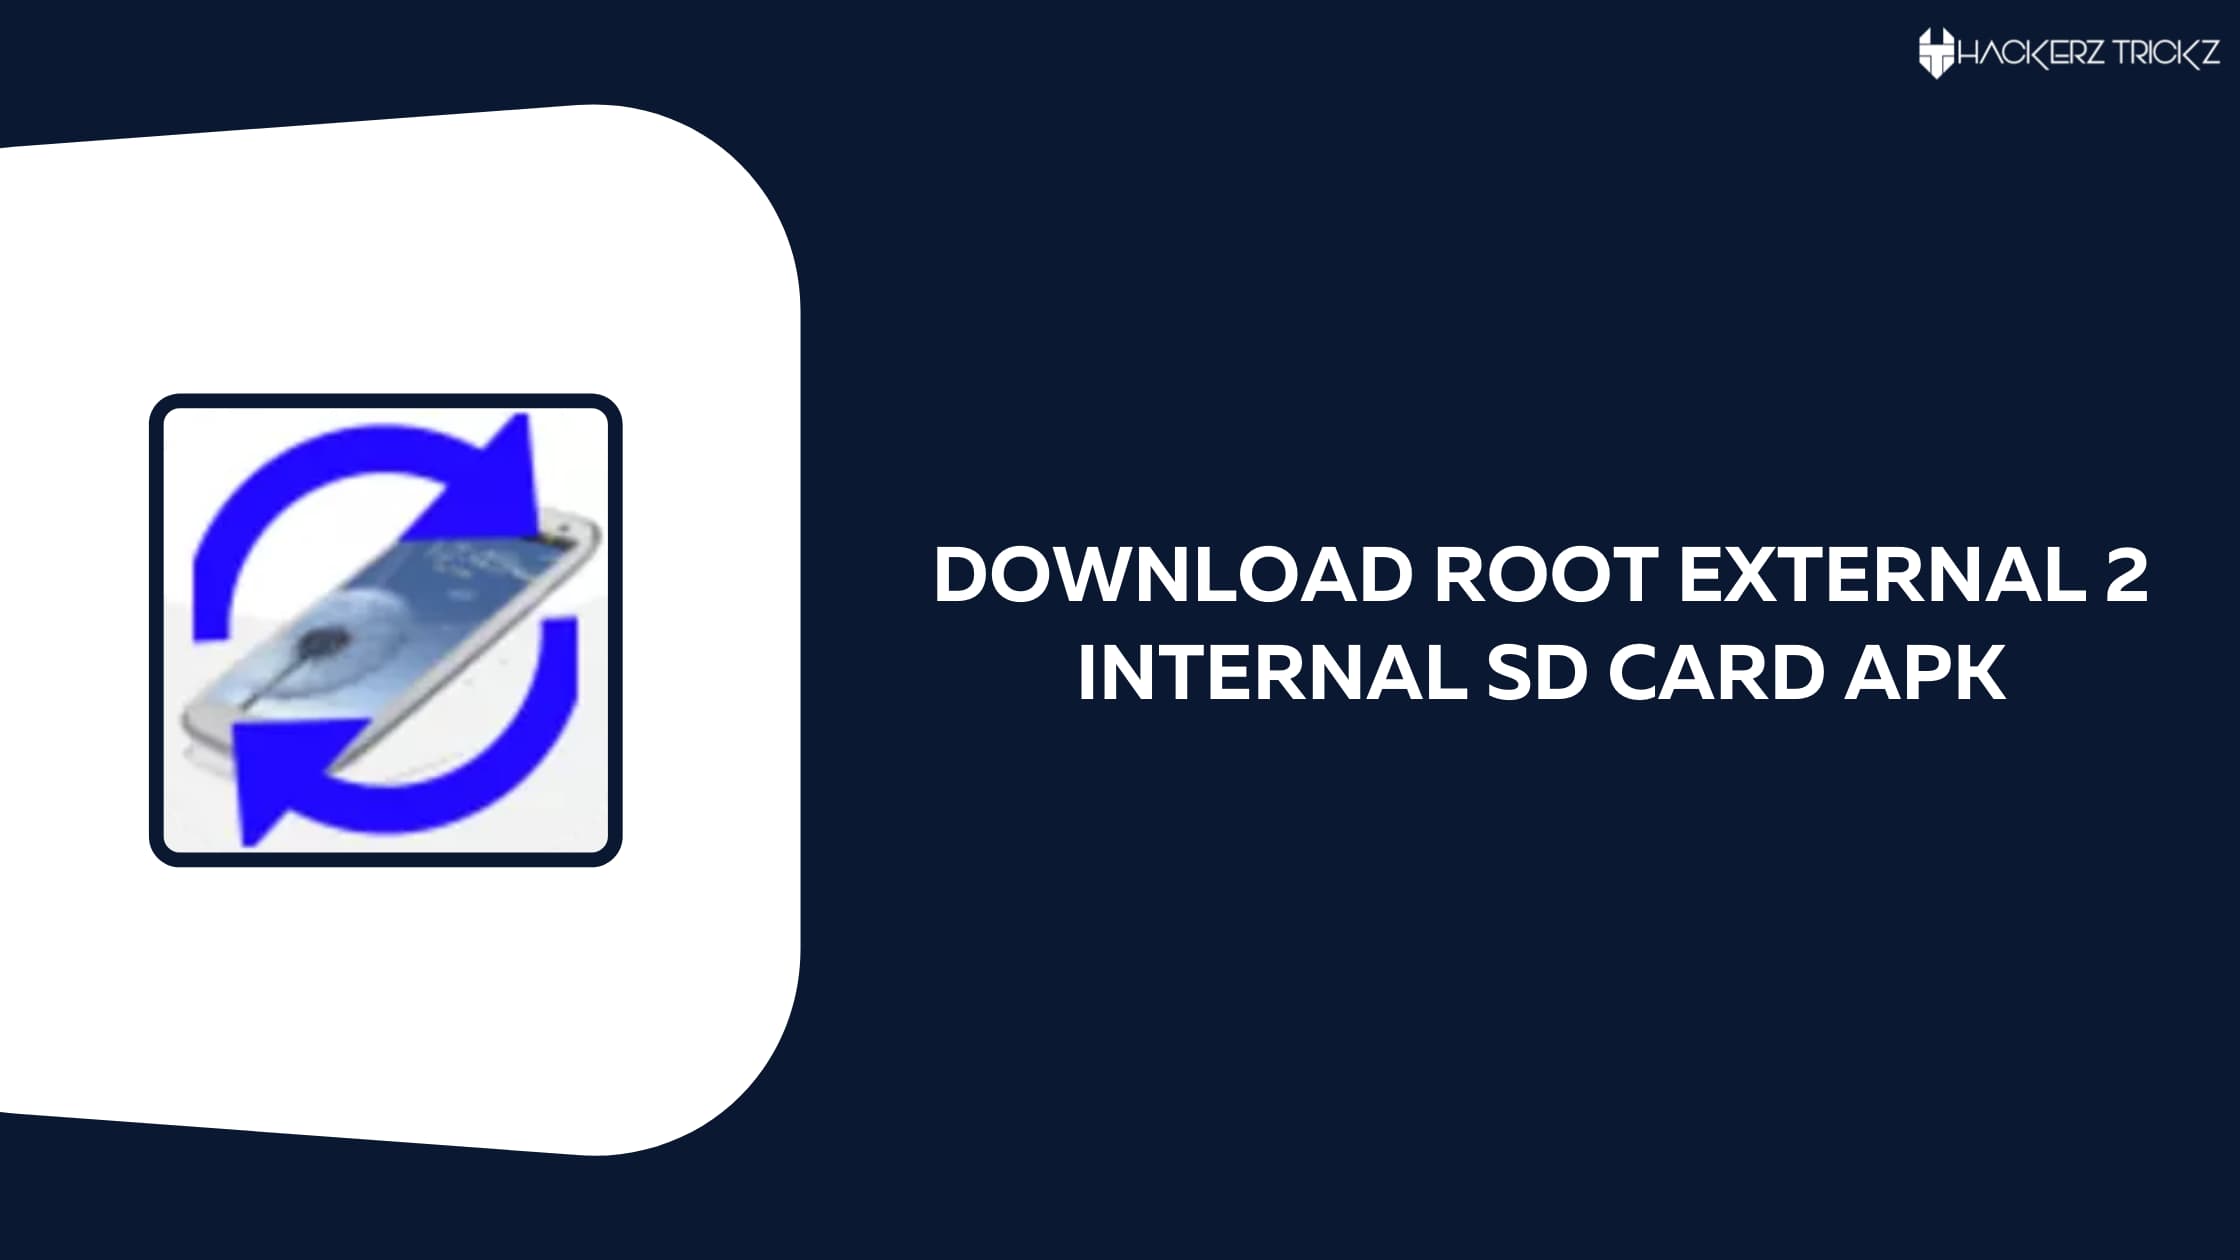 Download Root External 2 Internal SD Card Apk